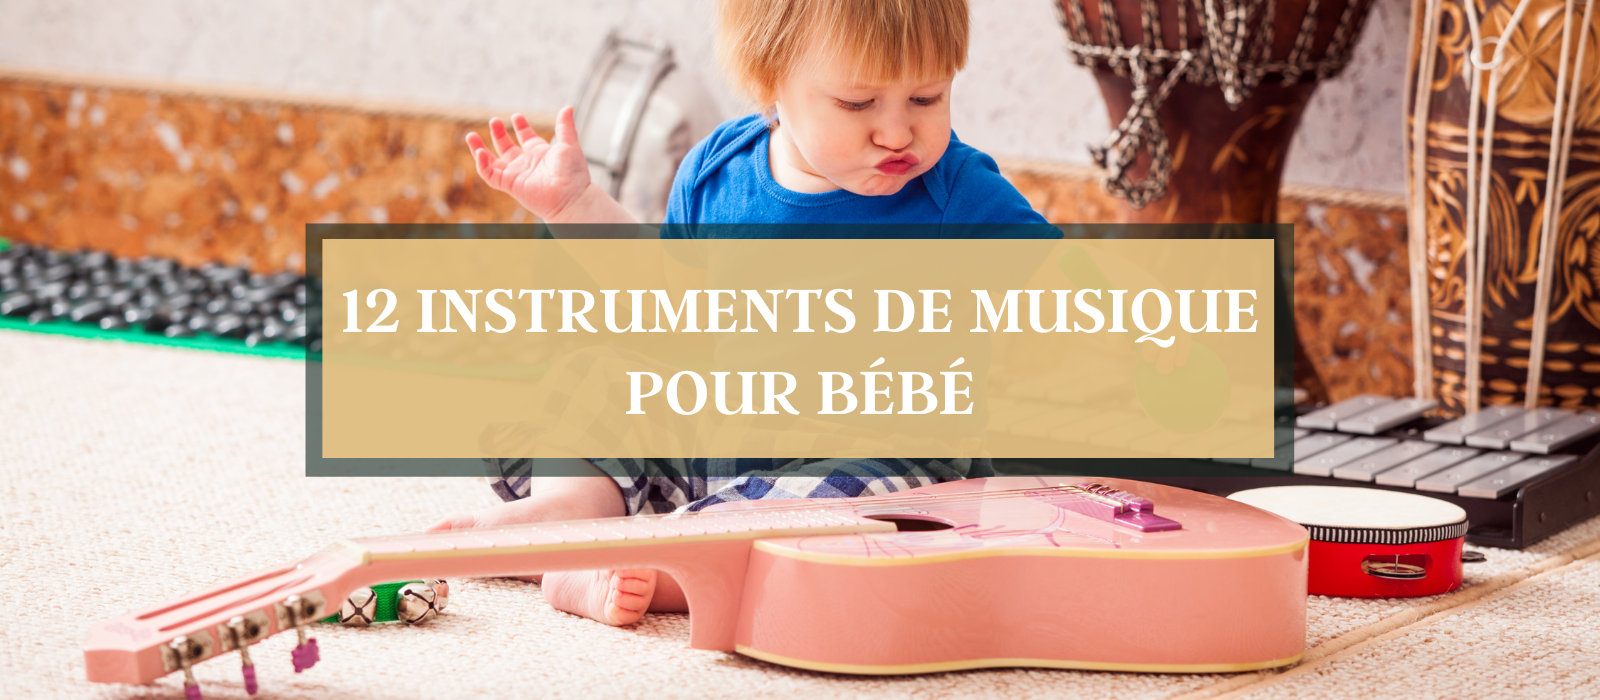 Les Enfants Jouent Différents Instruments De Musique